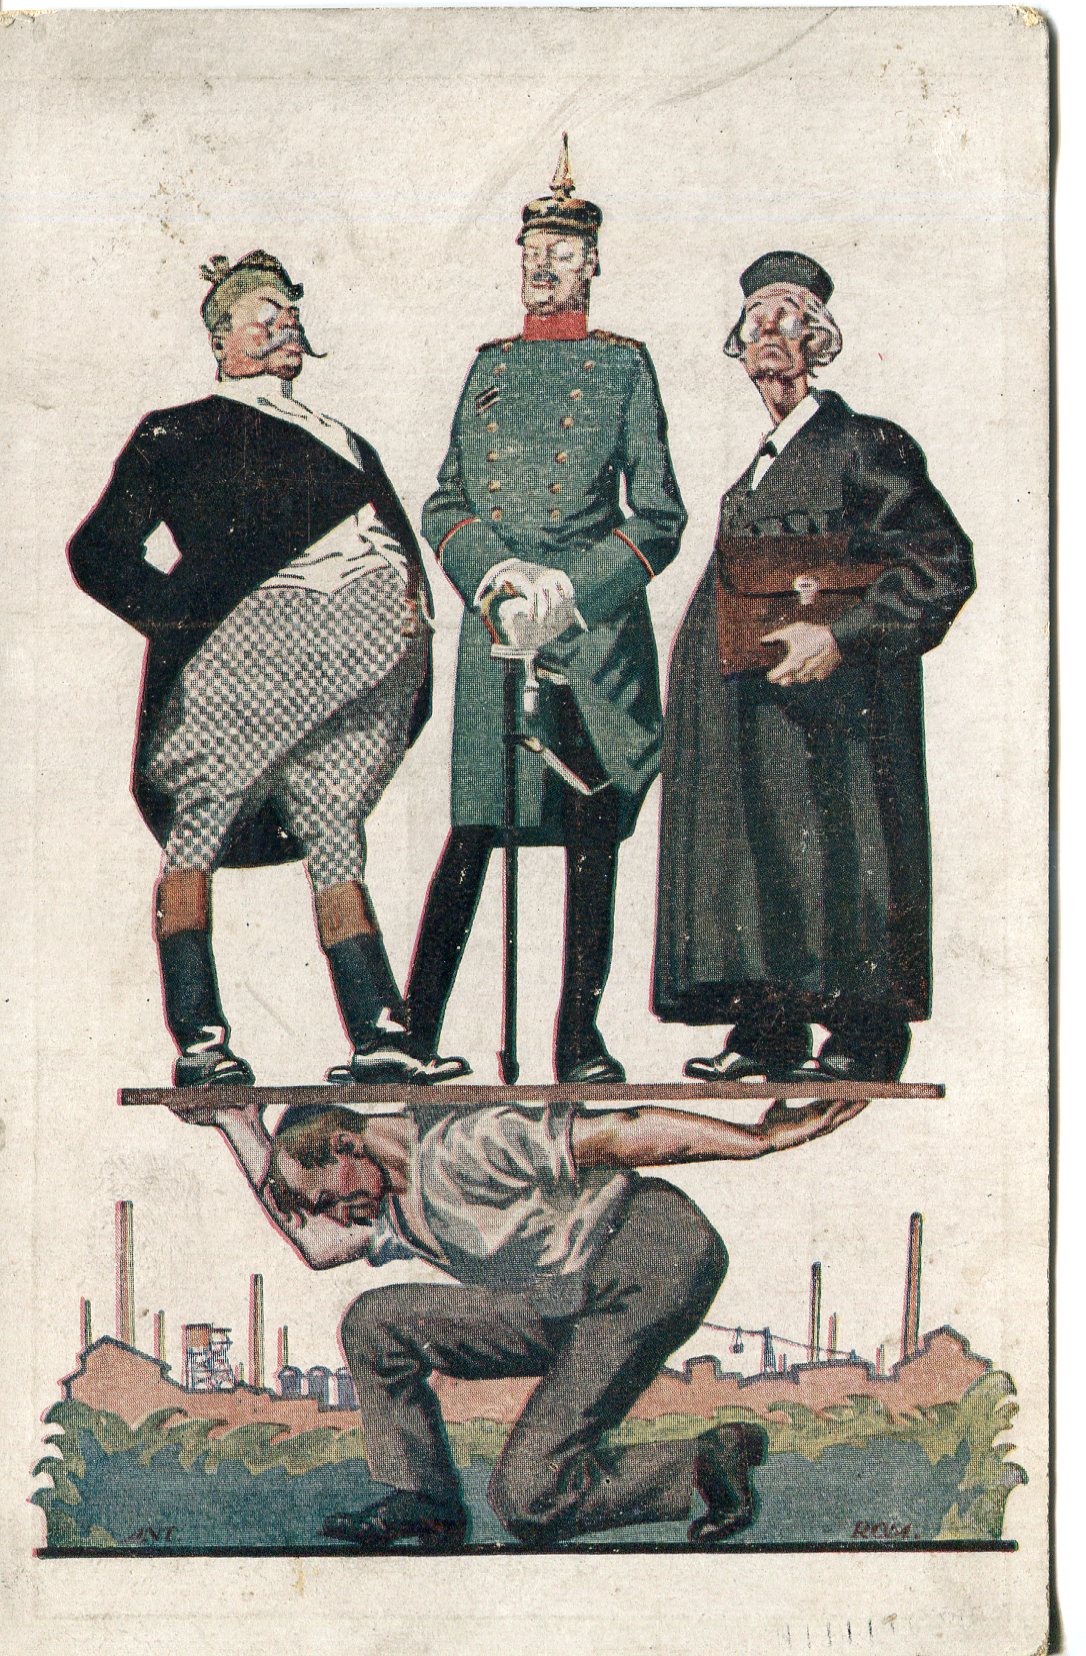 Pocztówka, pruski arystokrata, oficer oraz pastor, stoją na płycie położonej na plecach ploskiego robotnika